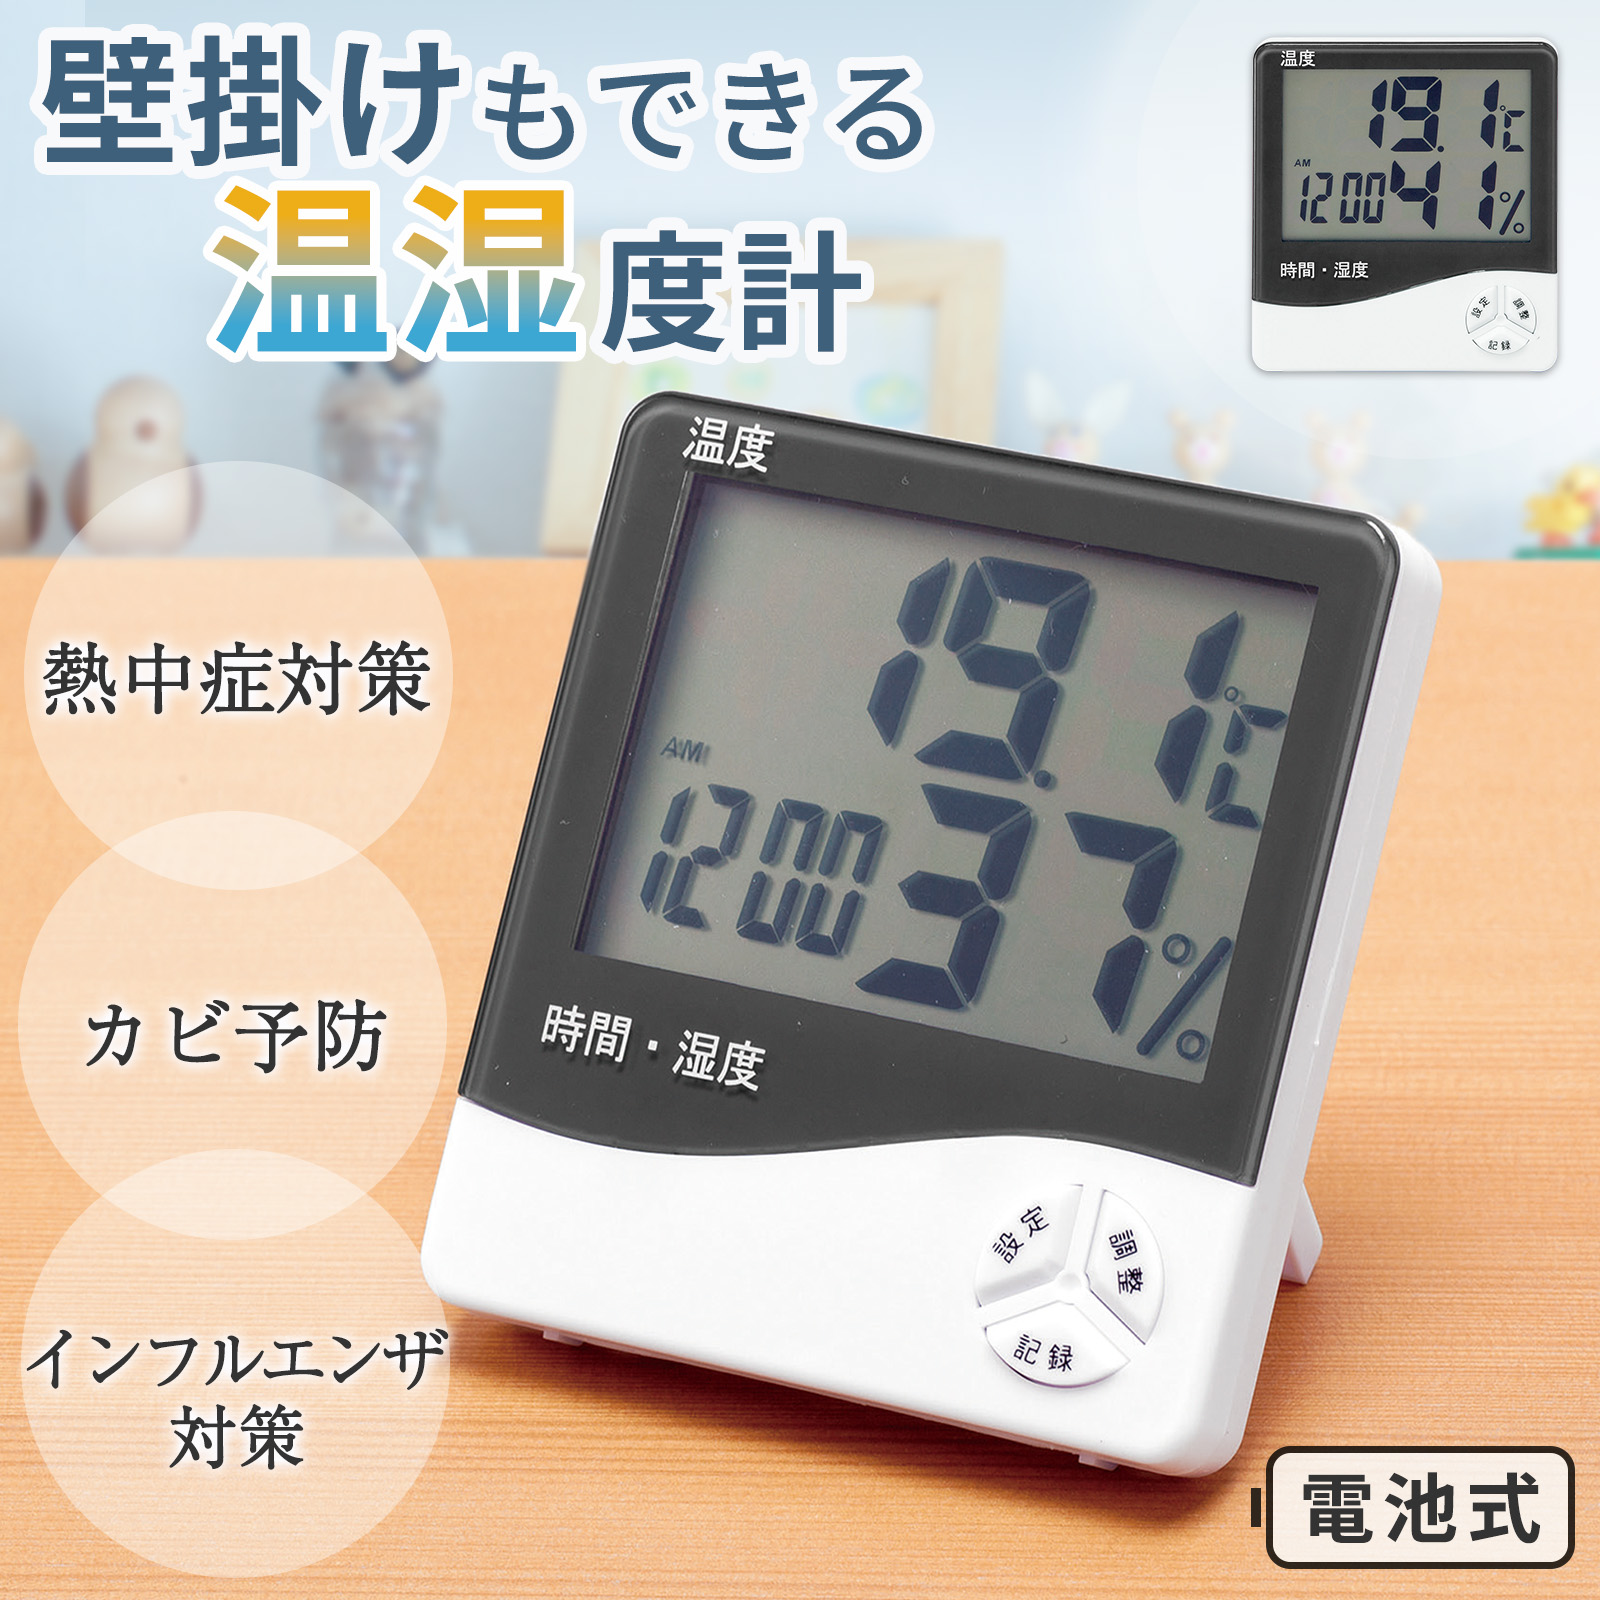 多機能デジタルアラーム付き電子時計,液晶透明画面,温度計,置時計